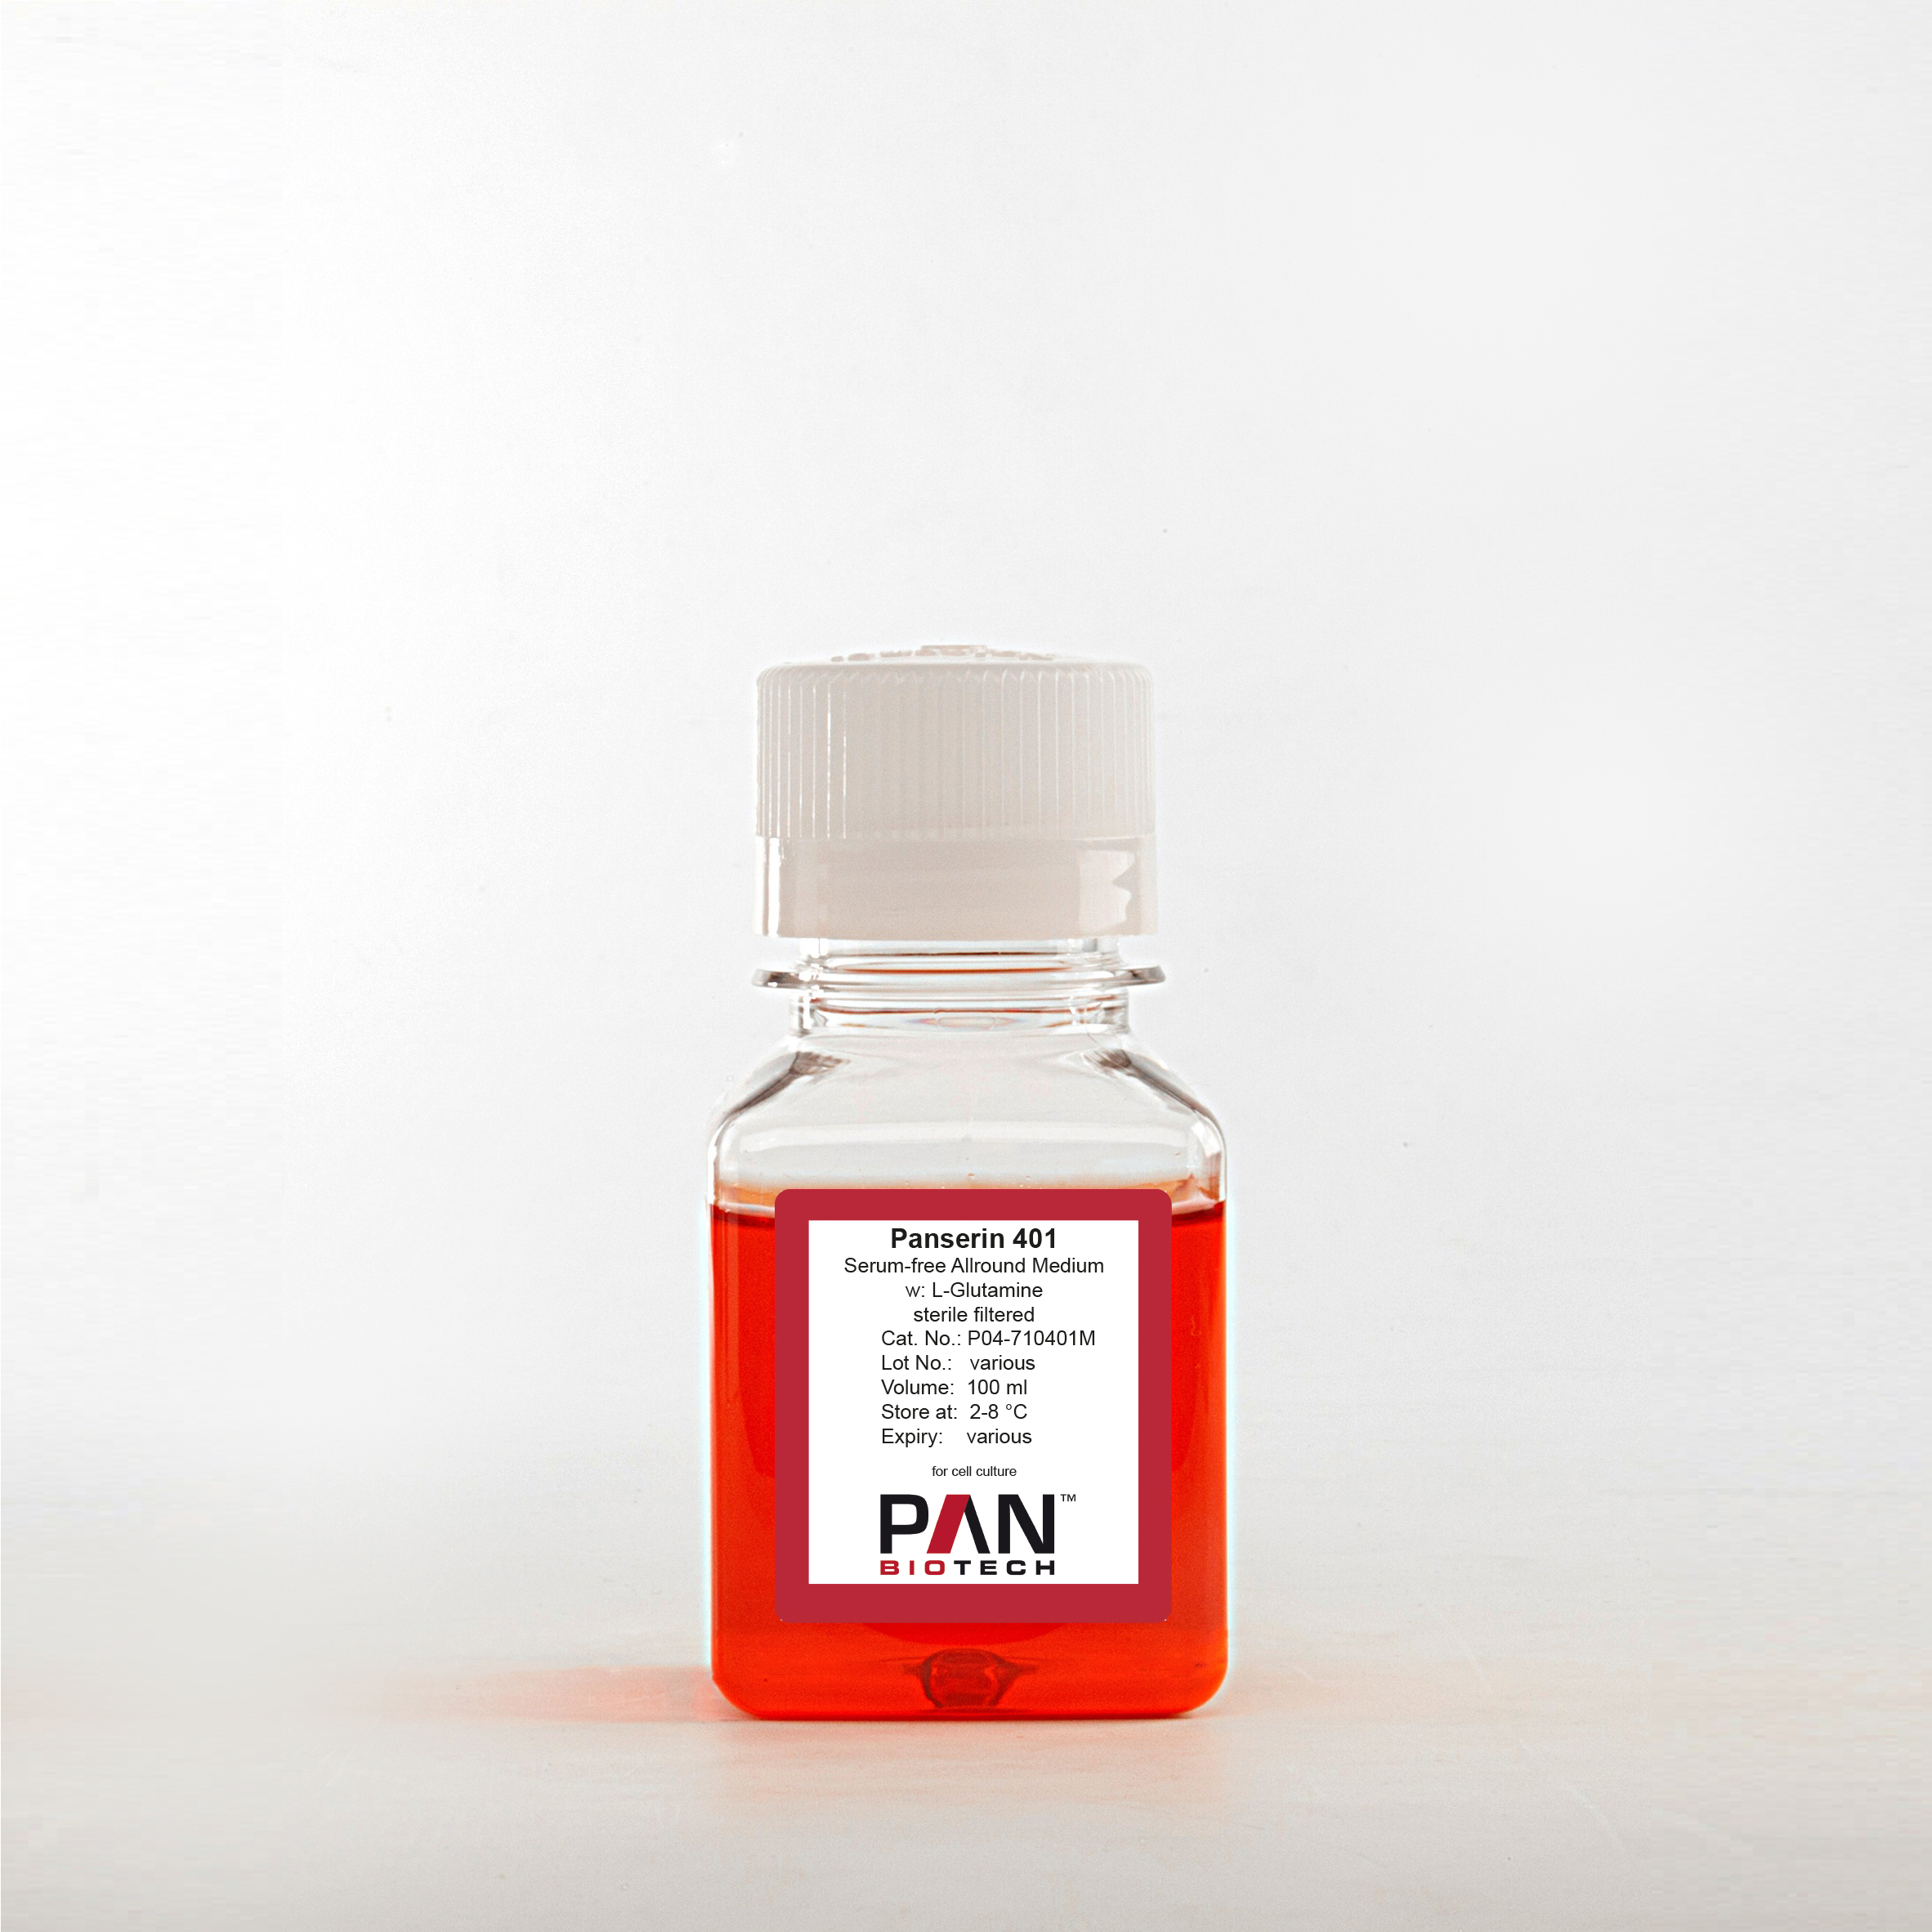 Panserin 401, Serum-free Allround Medium, w: L-Glutamine